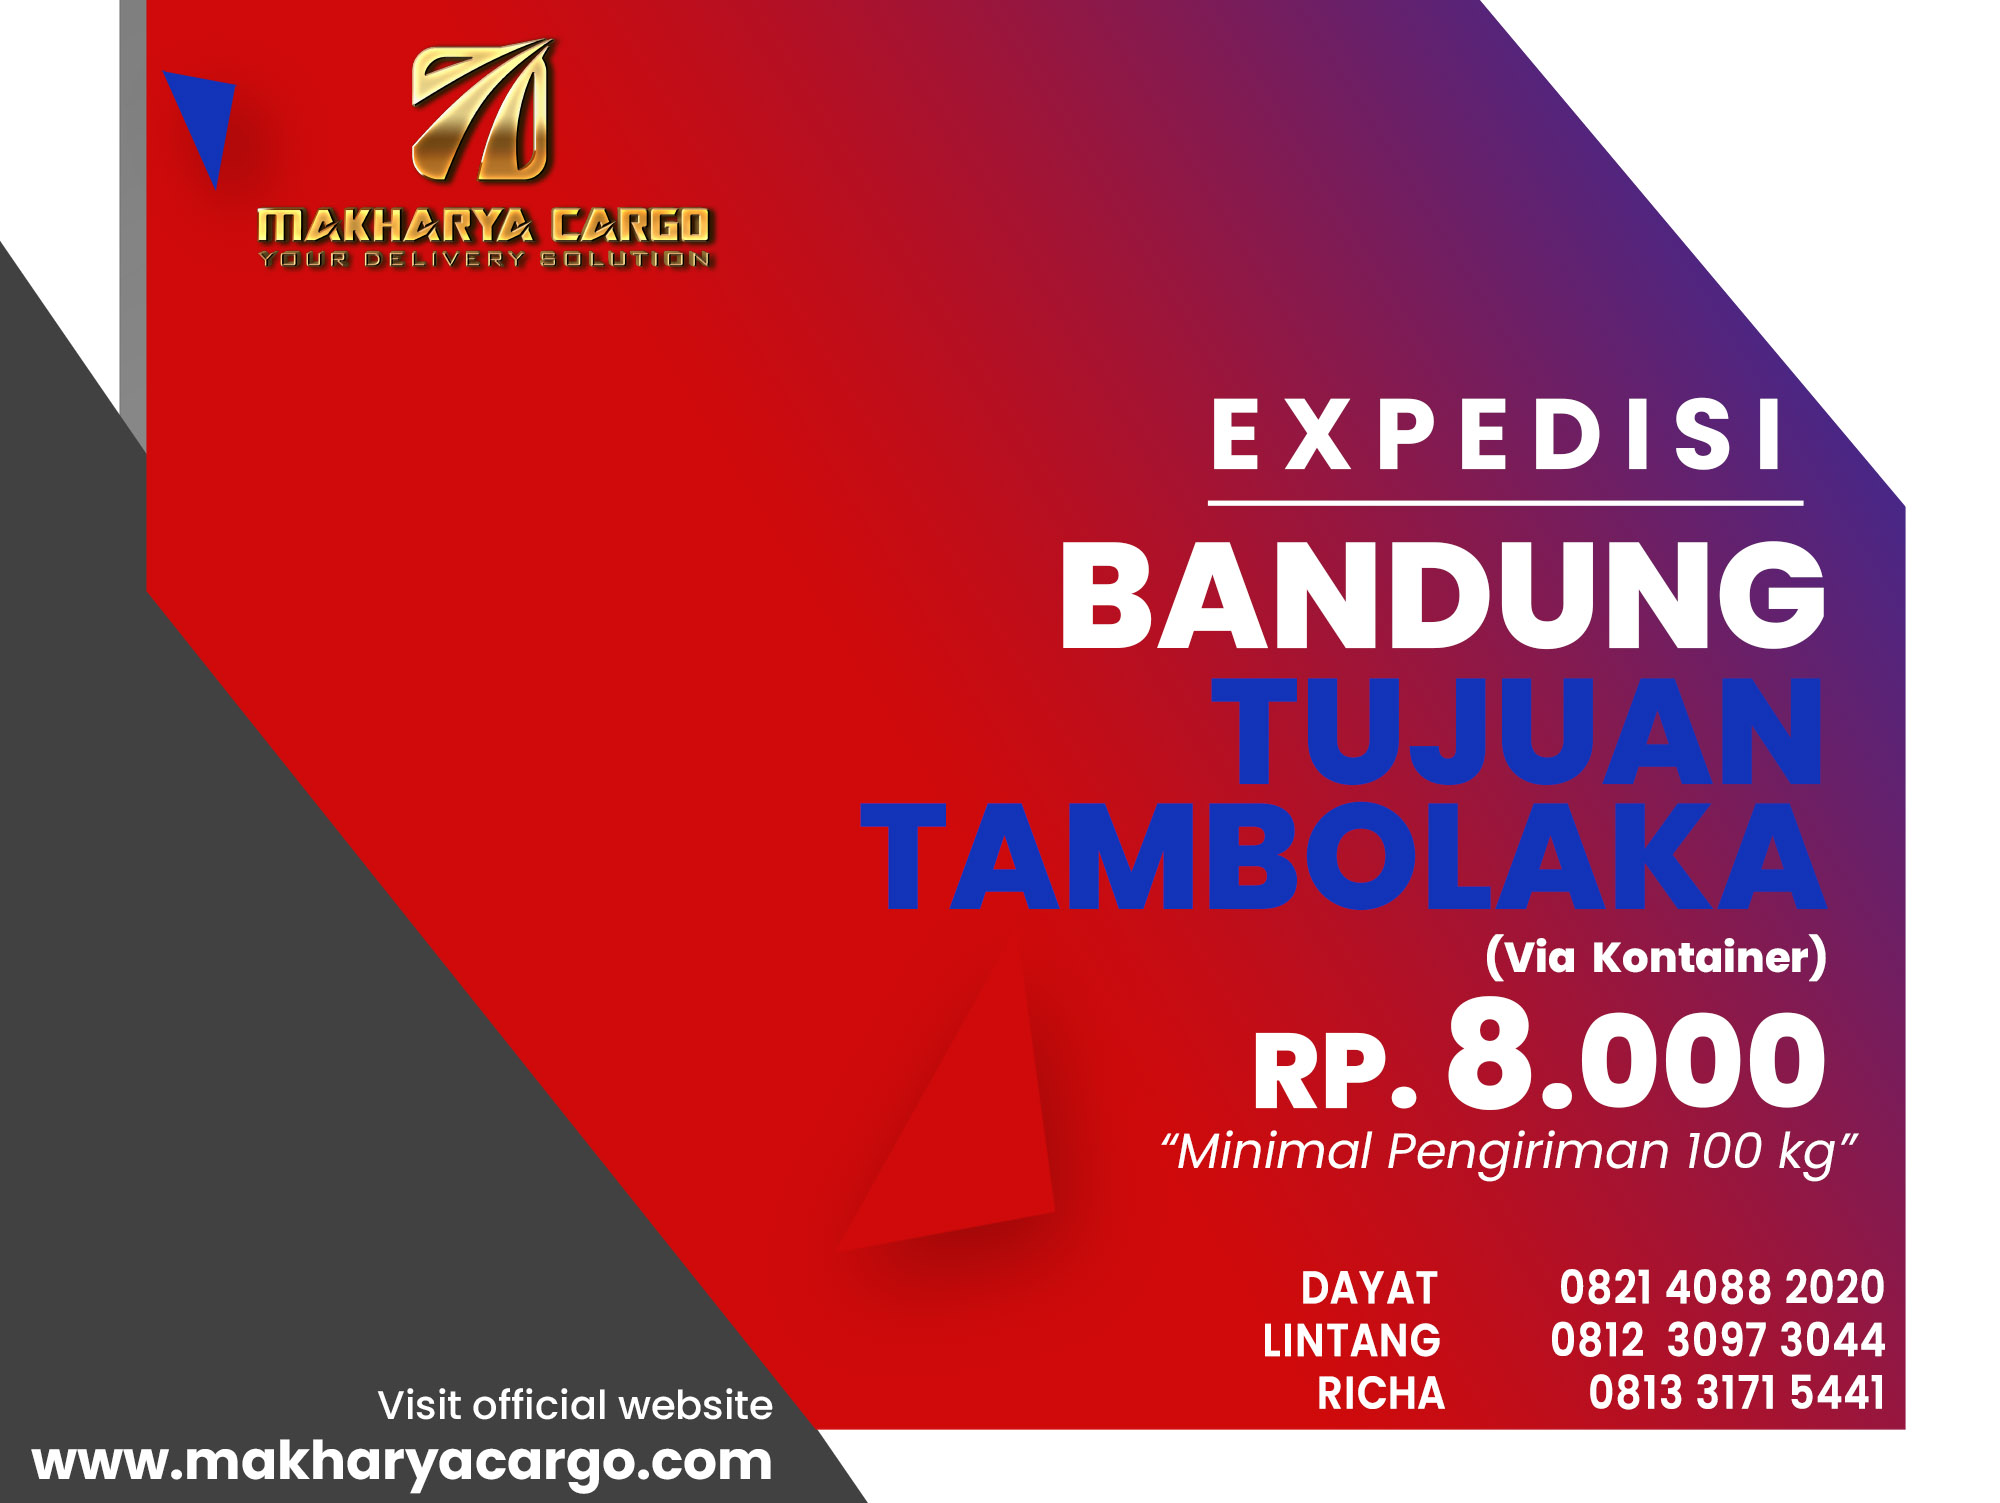 Ekspedisi Bandung Tambolaka Kontainer